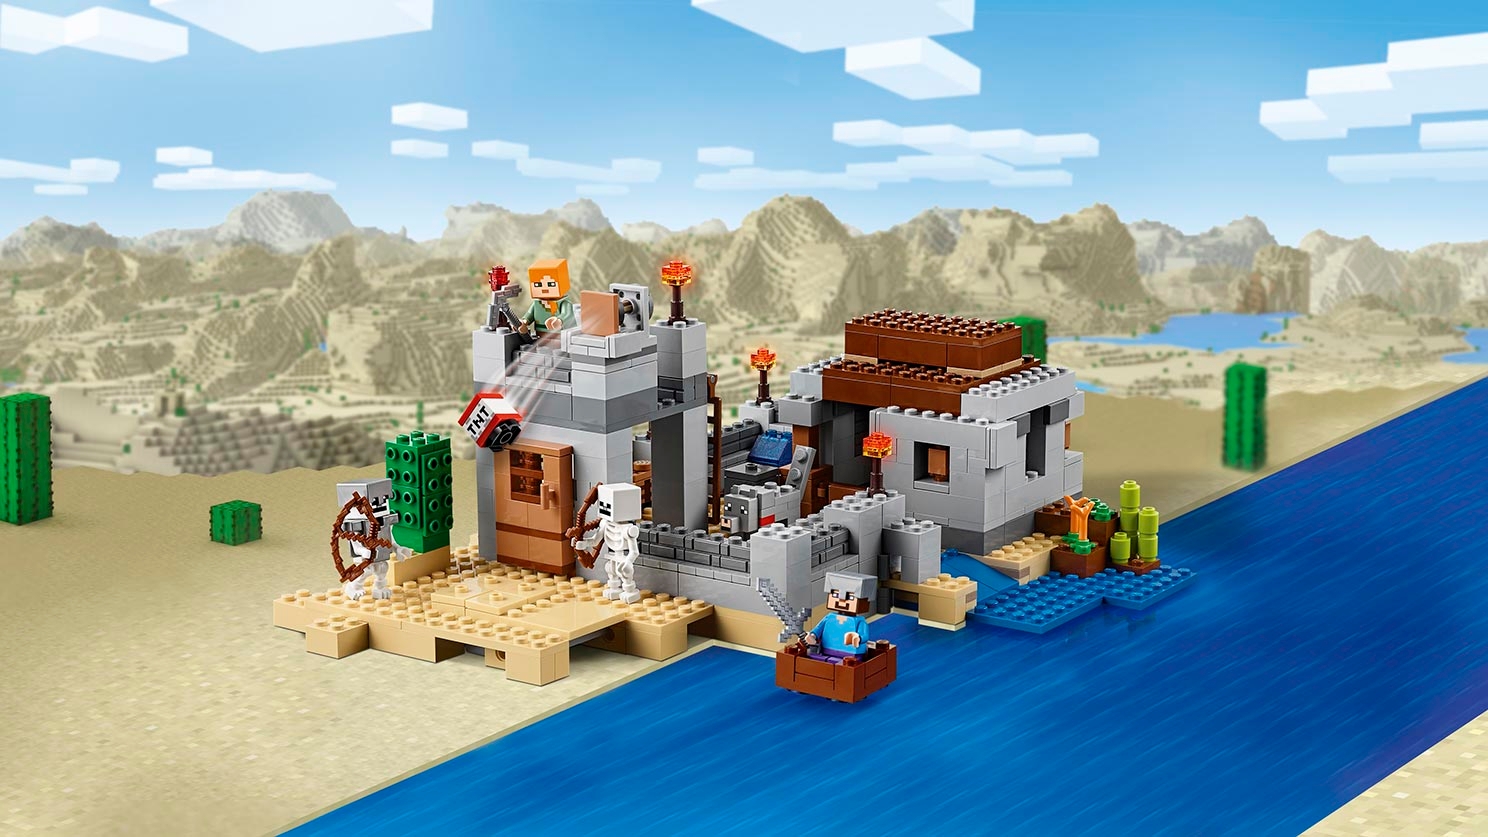 砂漠の要塞 21121 - レゴ®マインクラフト セット - LEGO.comキッズ